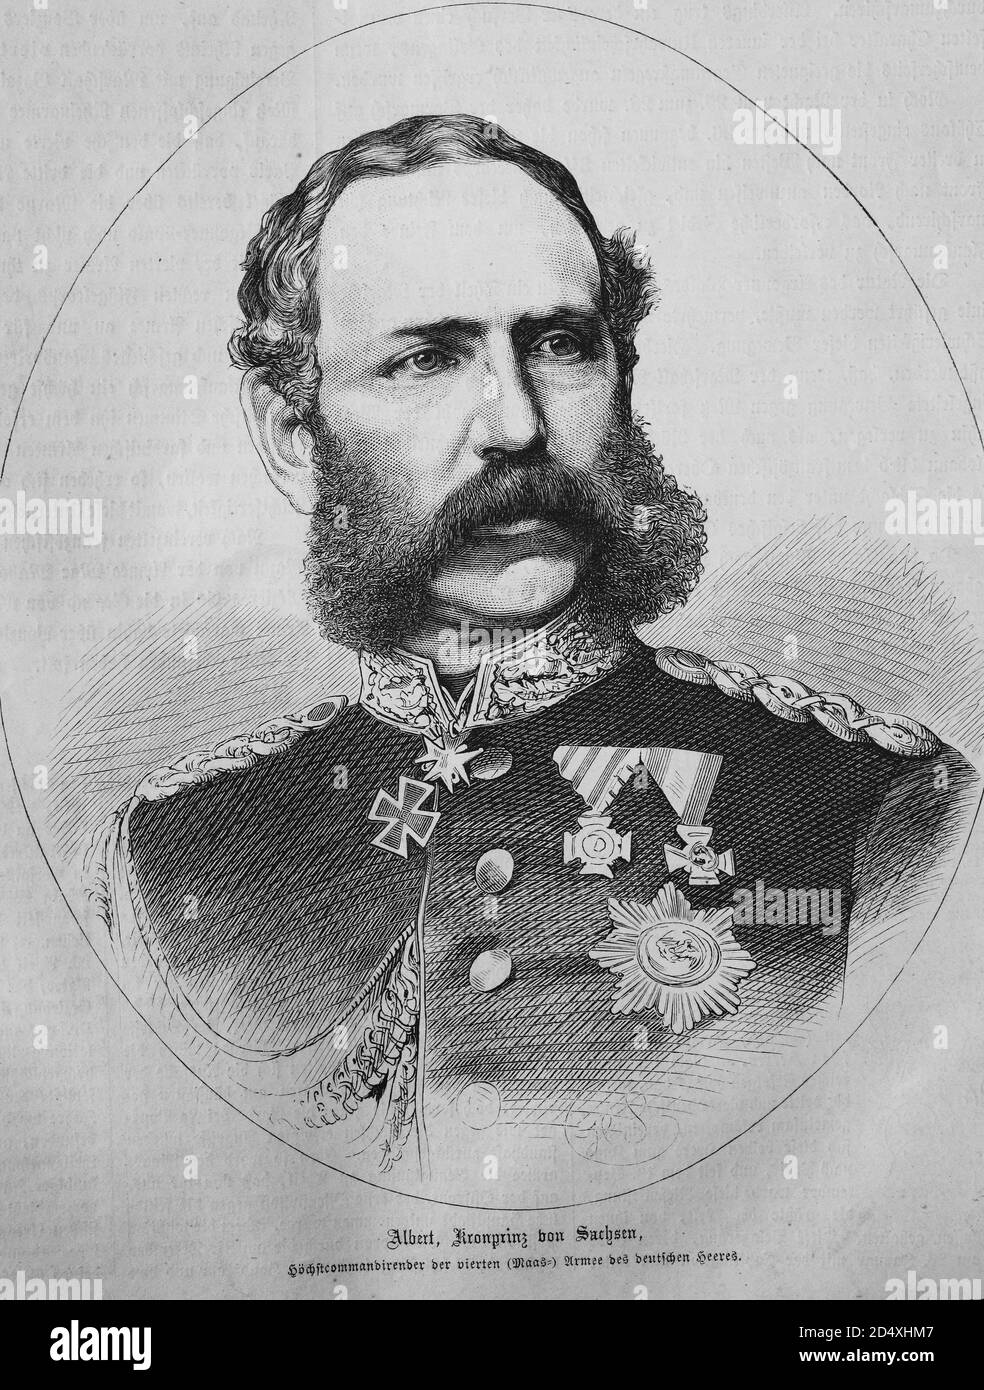 Albert von Sachsen, Kronprinz von Sachsen, illustrierte Kriegsgeschichte, Deutsch - Französischer Krieg 1870-1871 Stockfoto